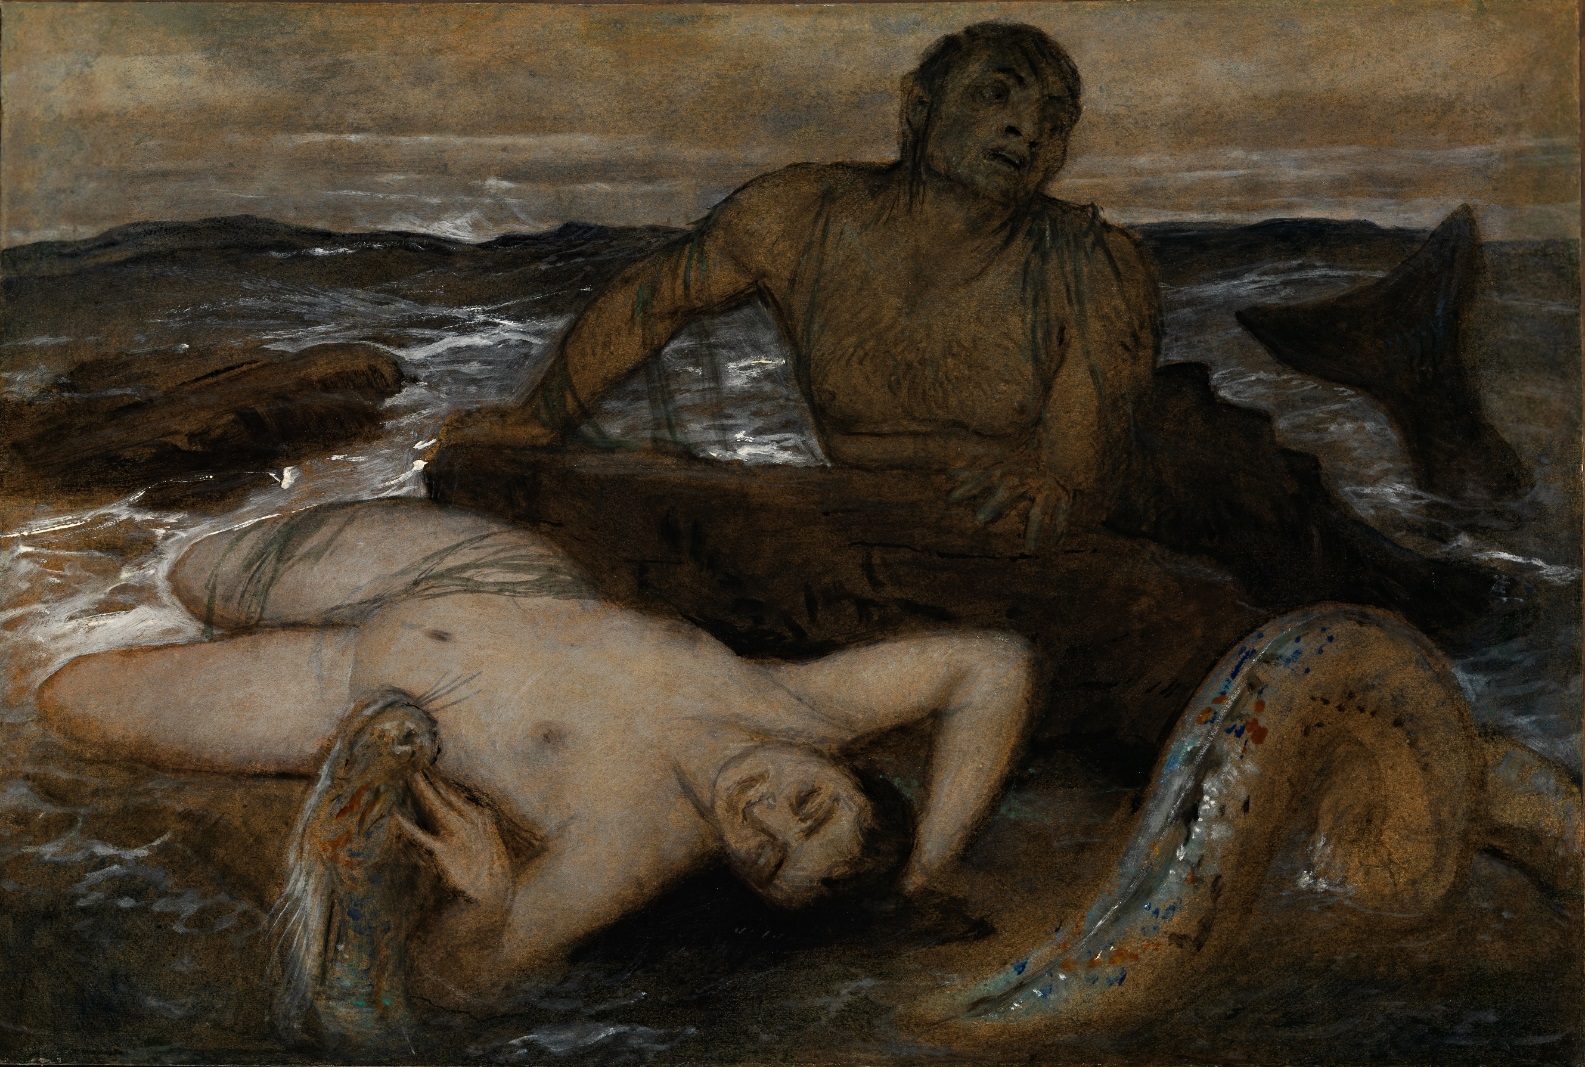  特裏同與涅瑞伊得斯 by Arnold Böcklin - 1877 - 77 x 105 厘米 